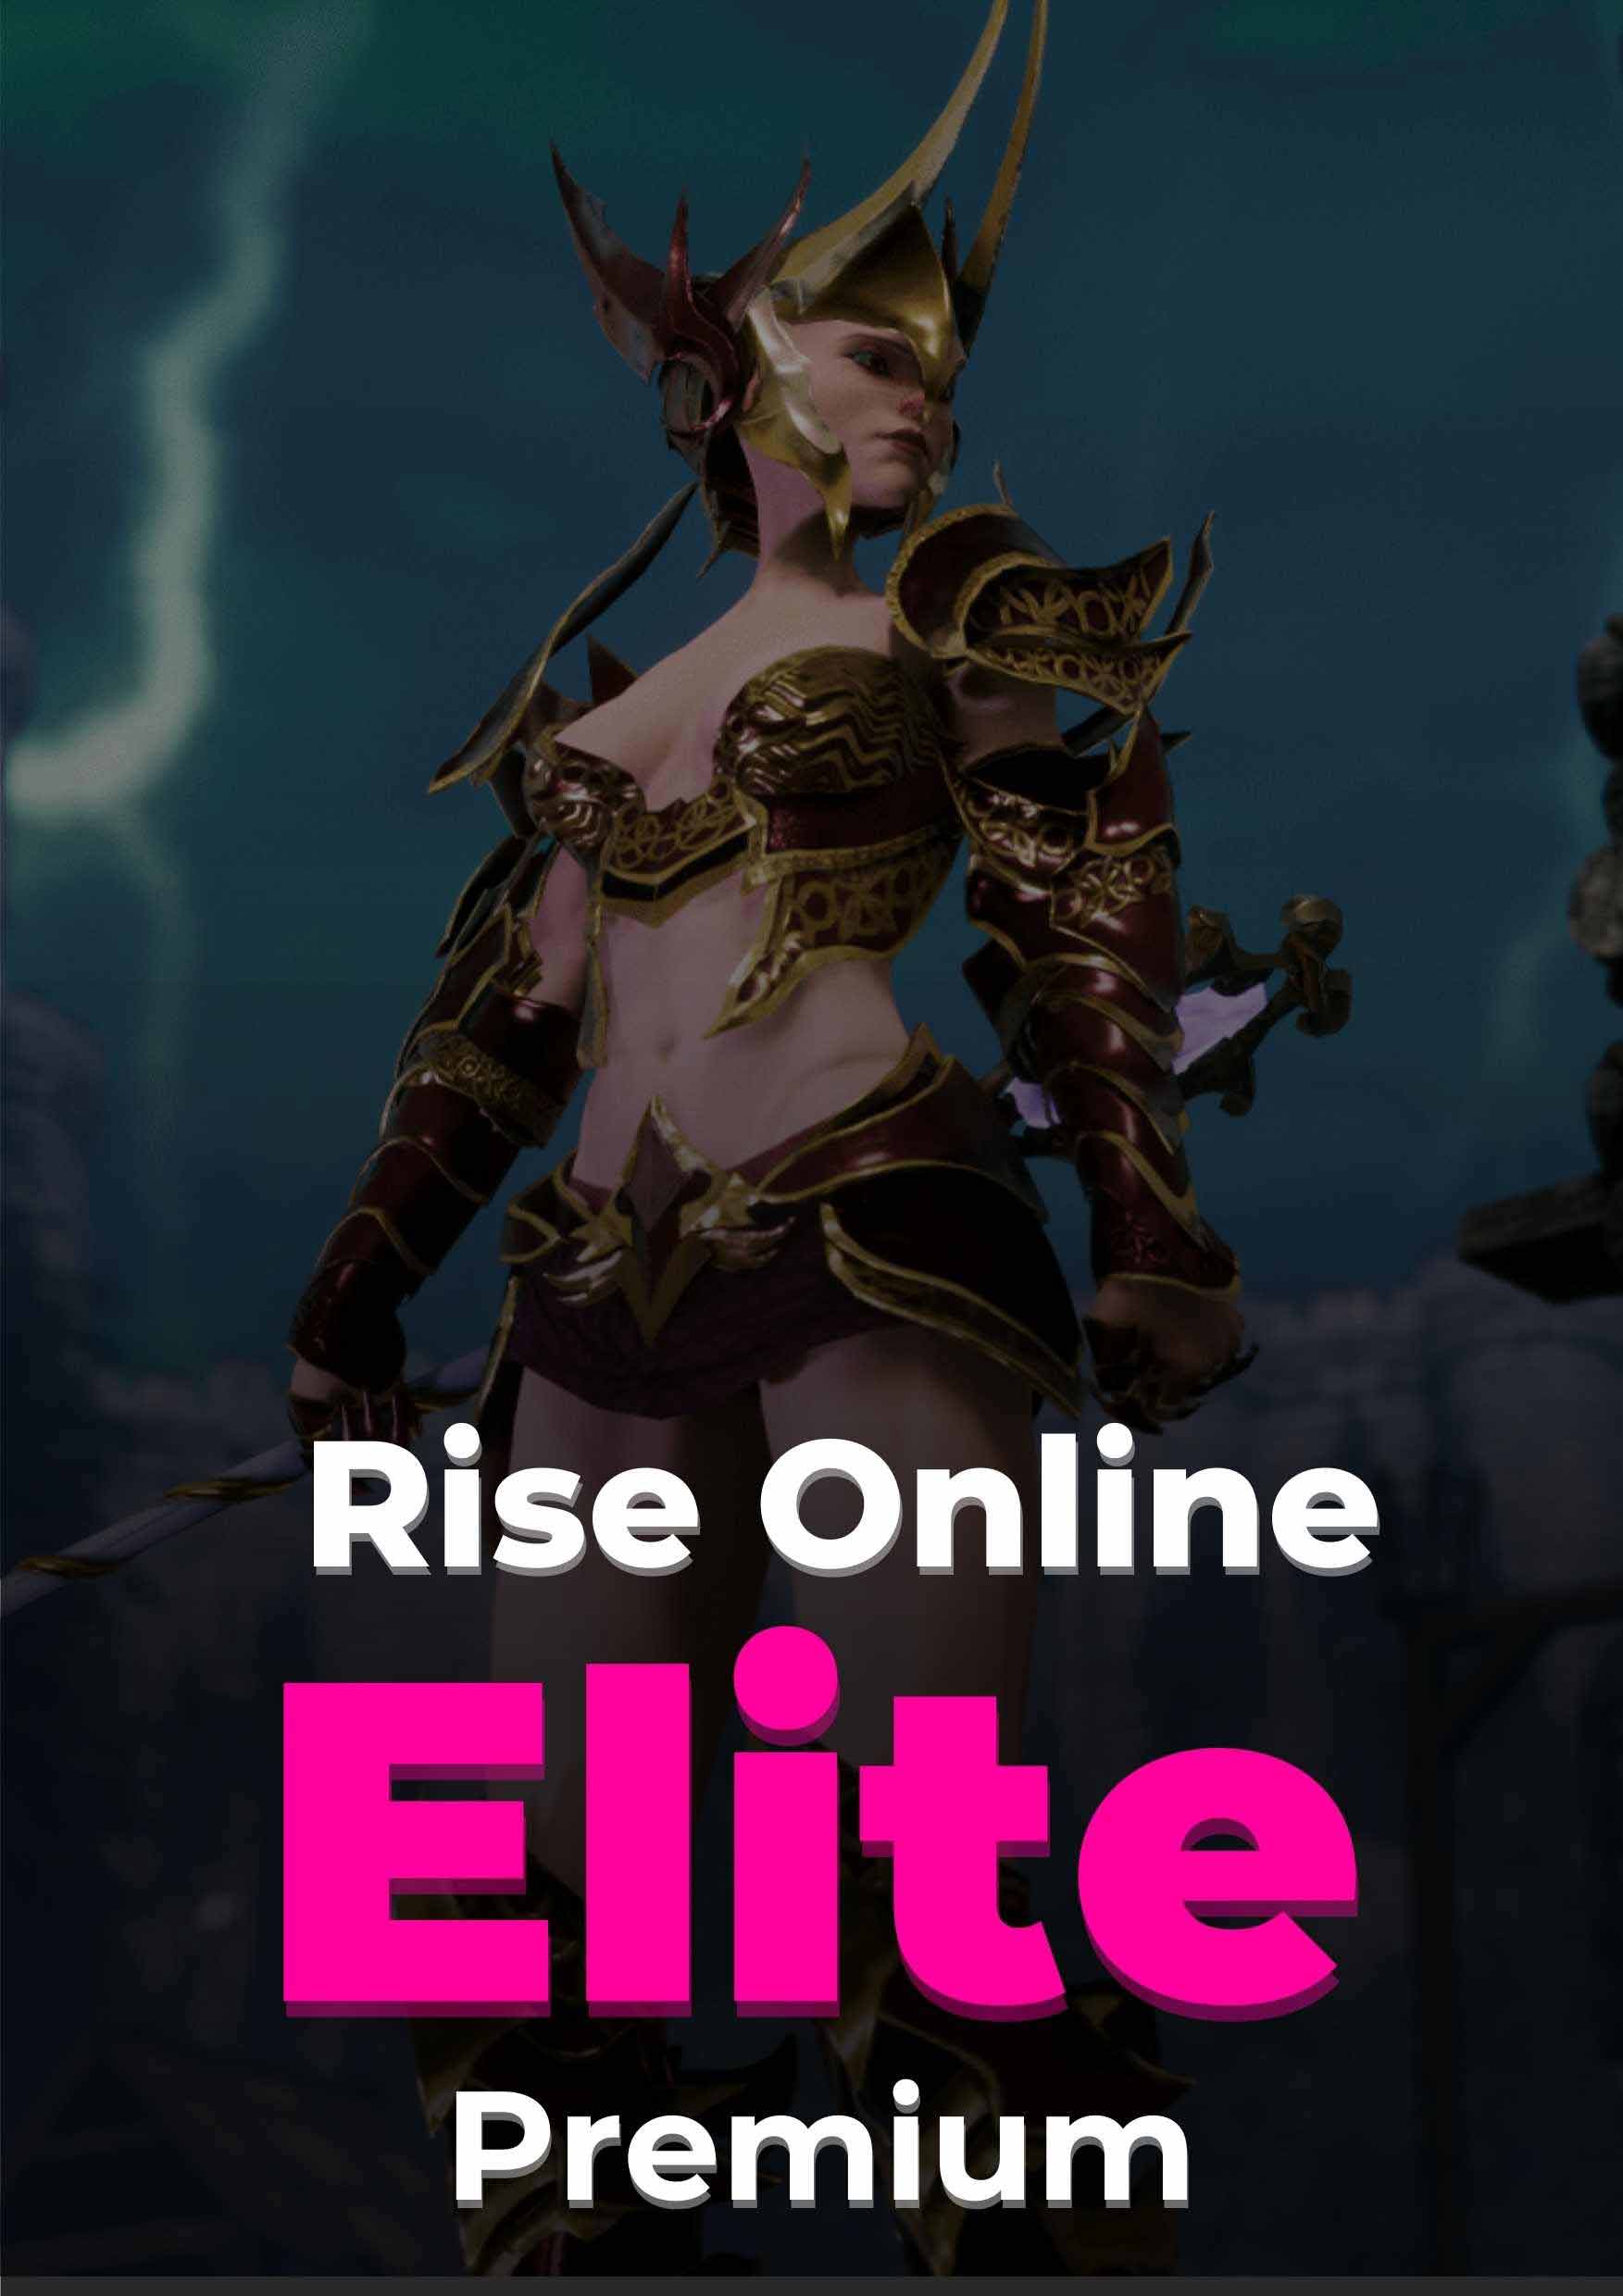 Rise Online Elite Premium